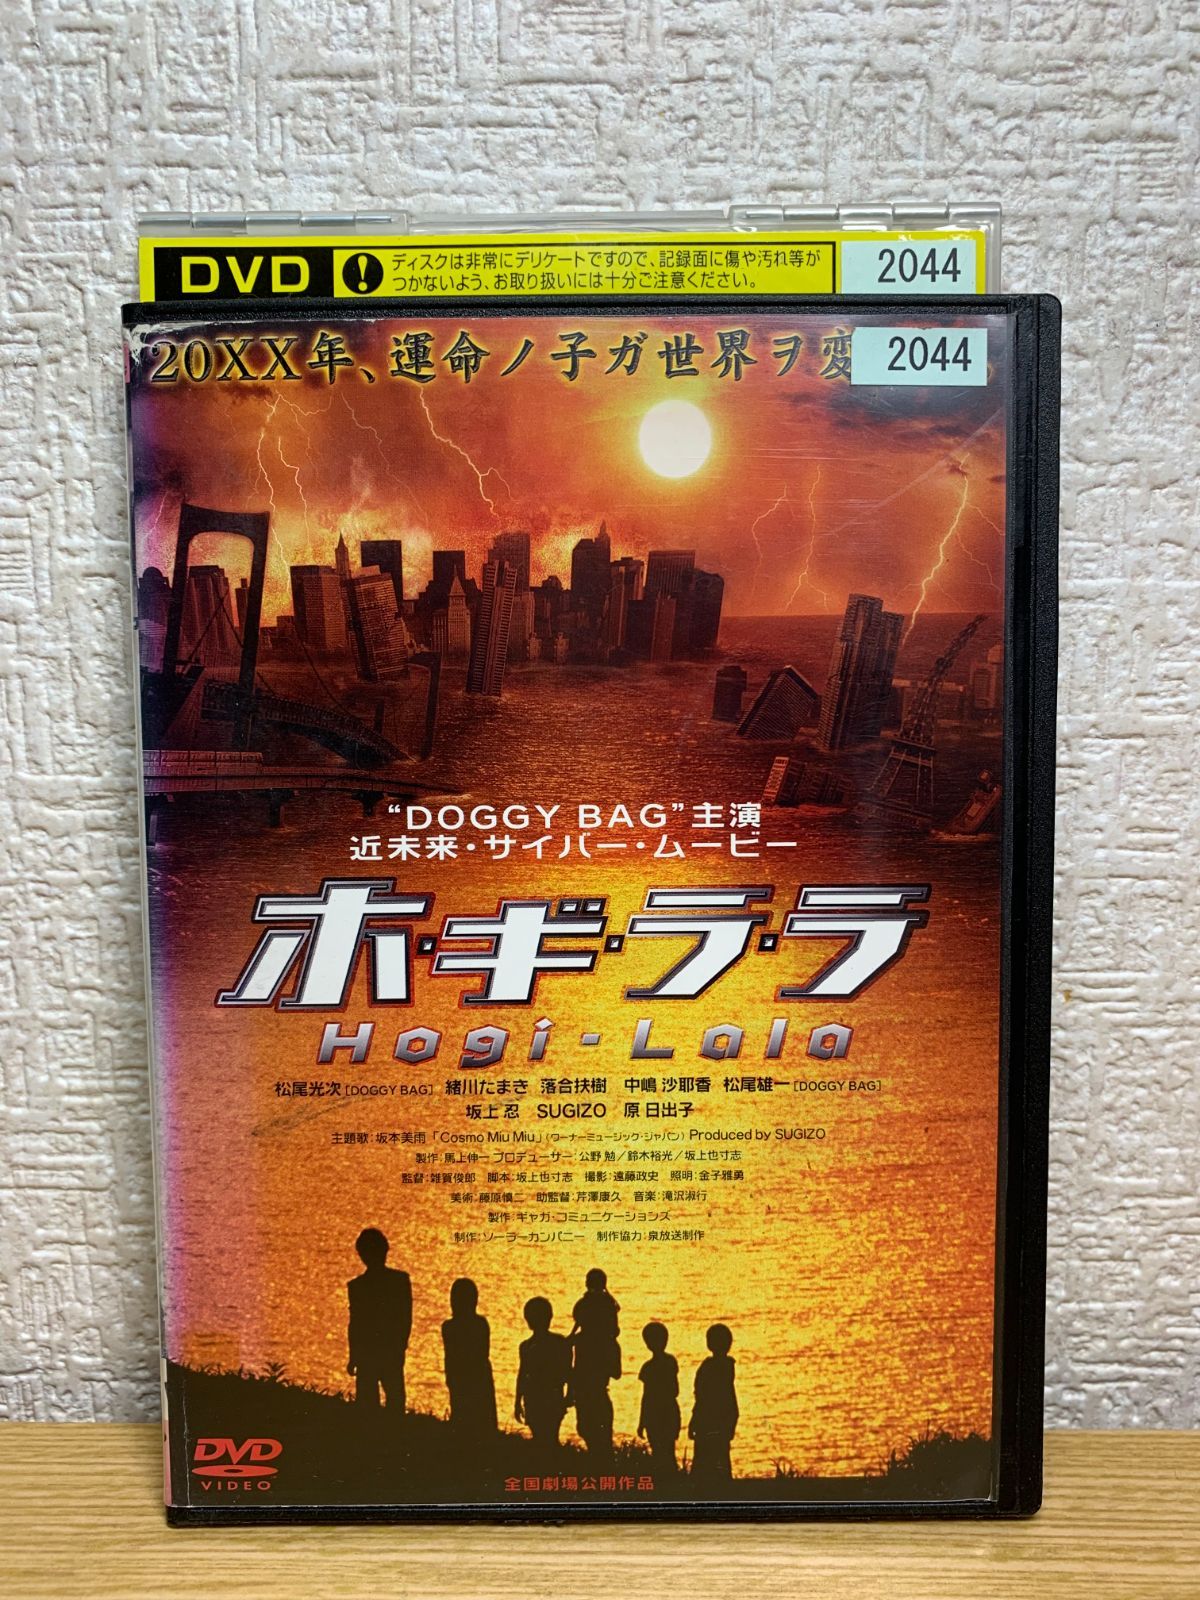 ホ・ギ・ラ・ラ Hogi-Lala DVD